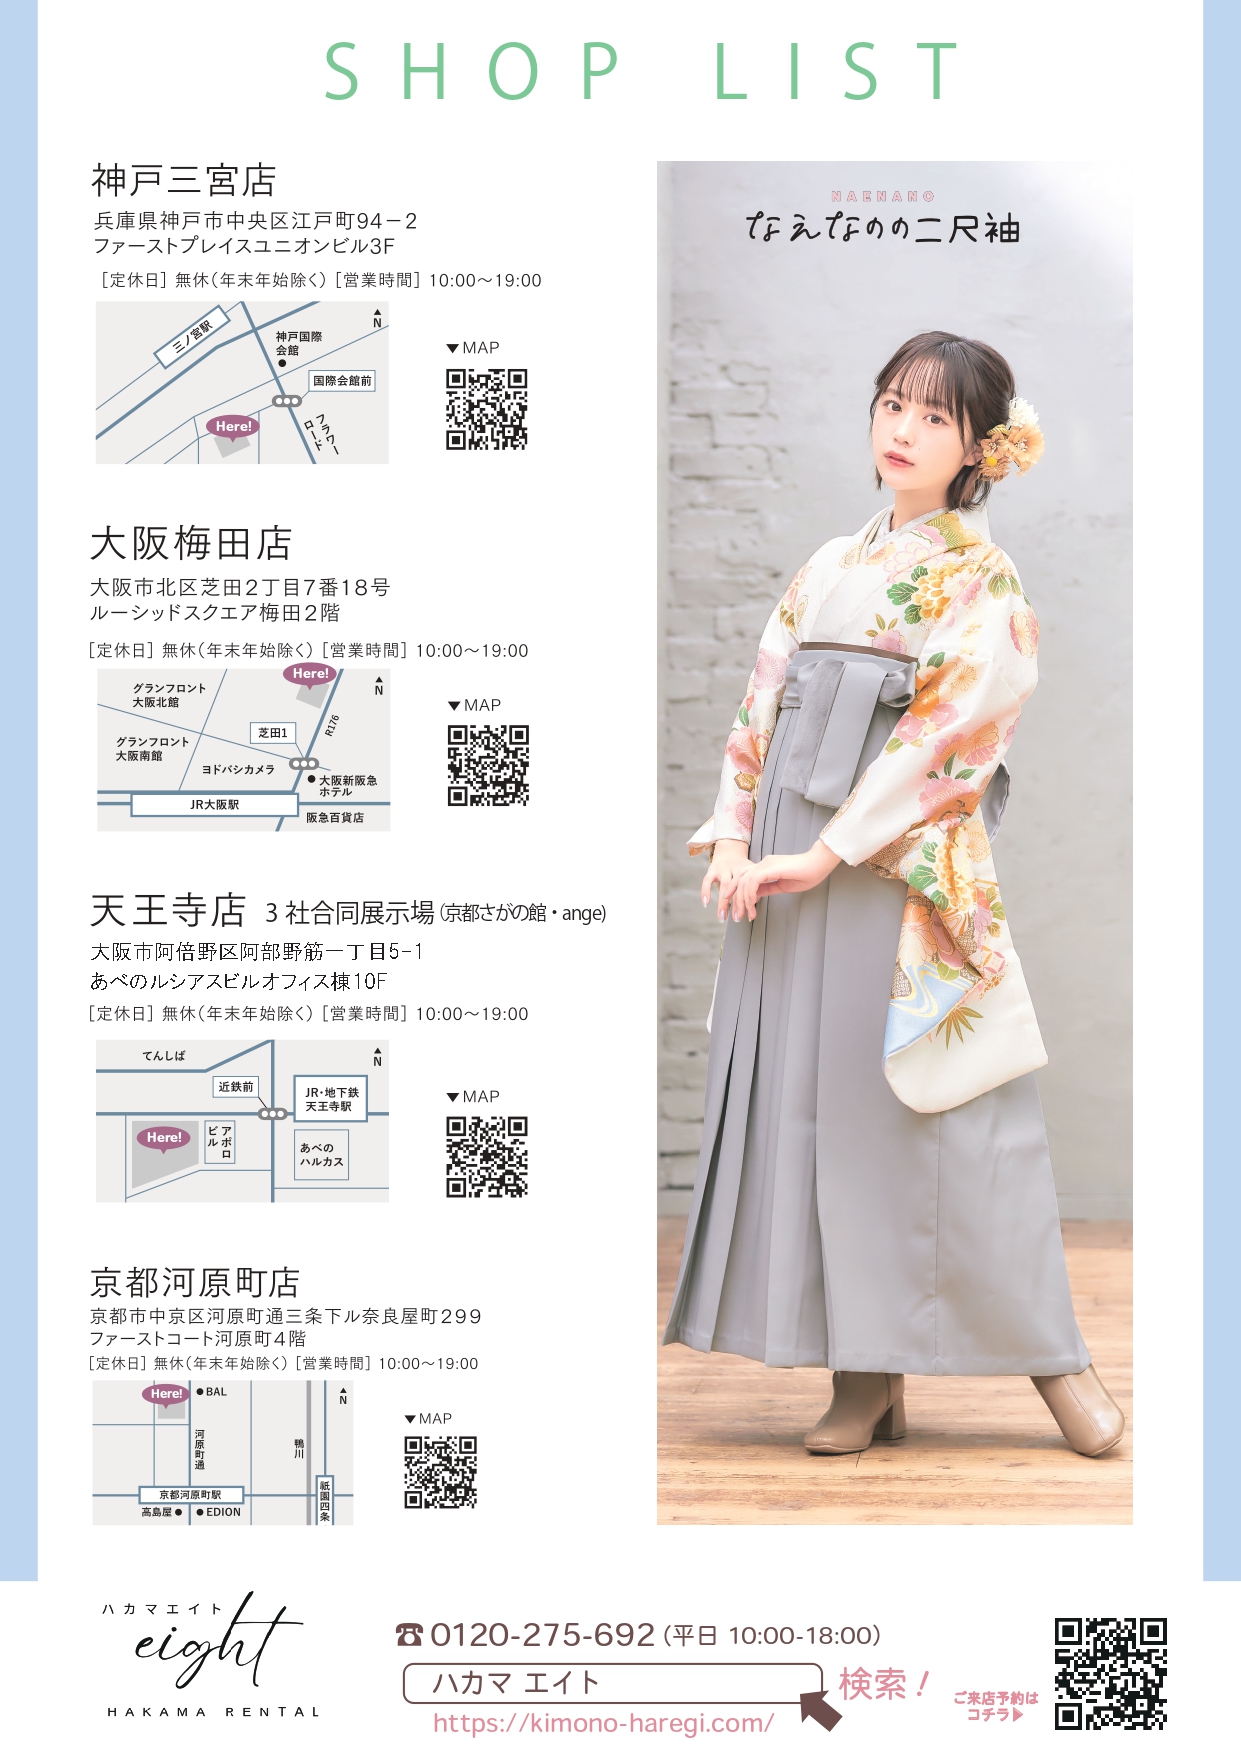 奈良工業高等専門学校の卒業式袴レンタルの展示会情報